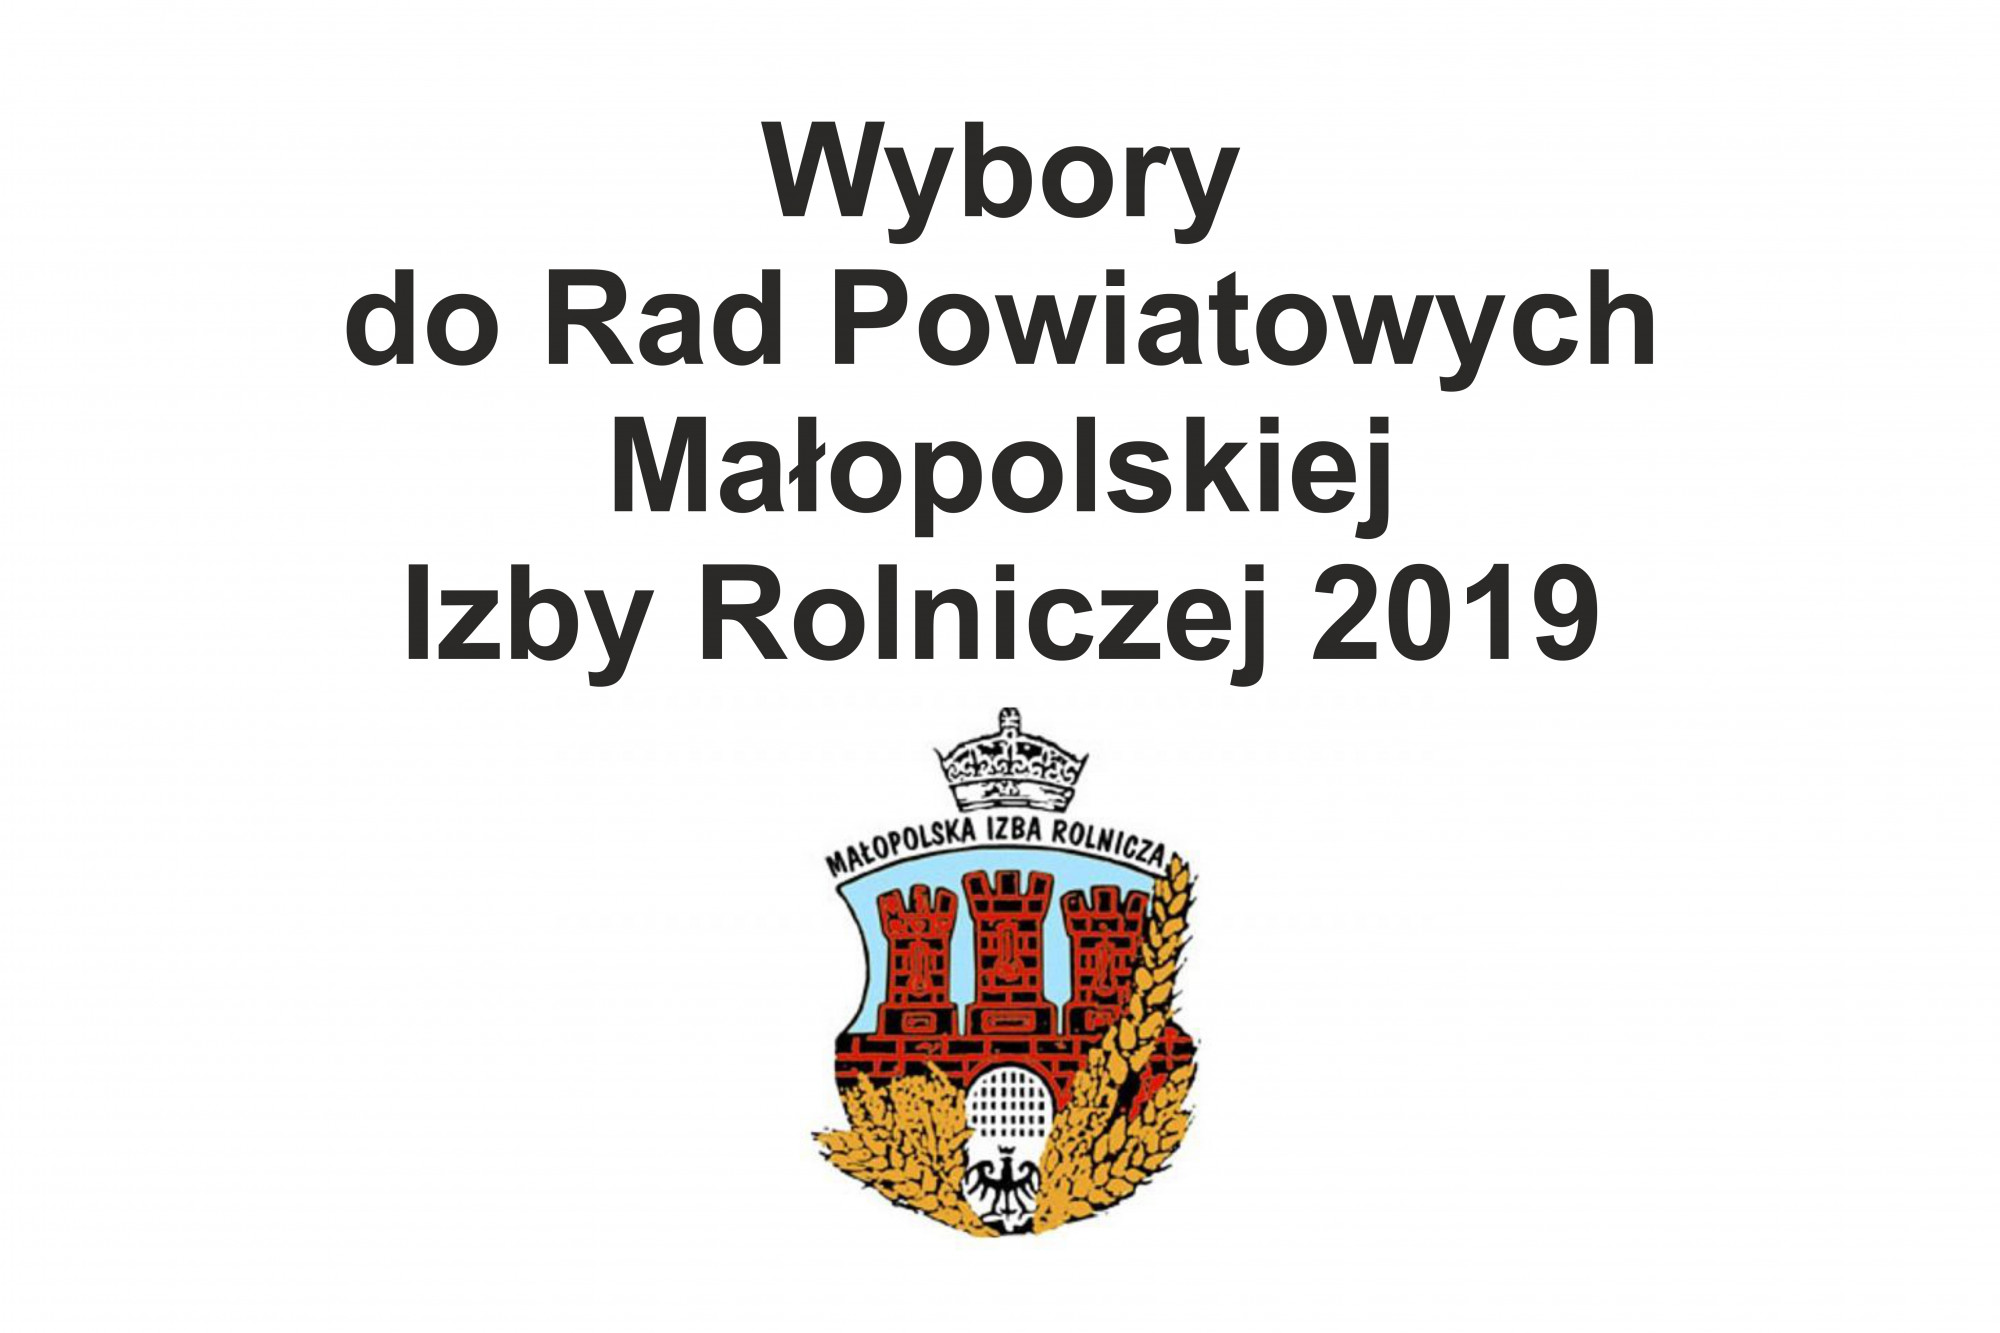 Wybory do Rad Powiatowych Małopolskiej Izby Rolniczej 2019